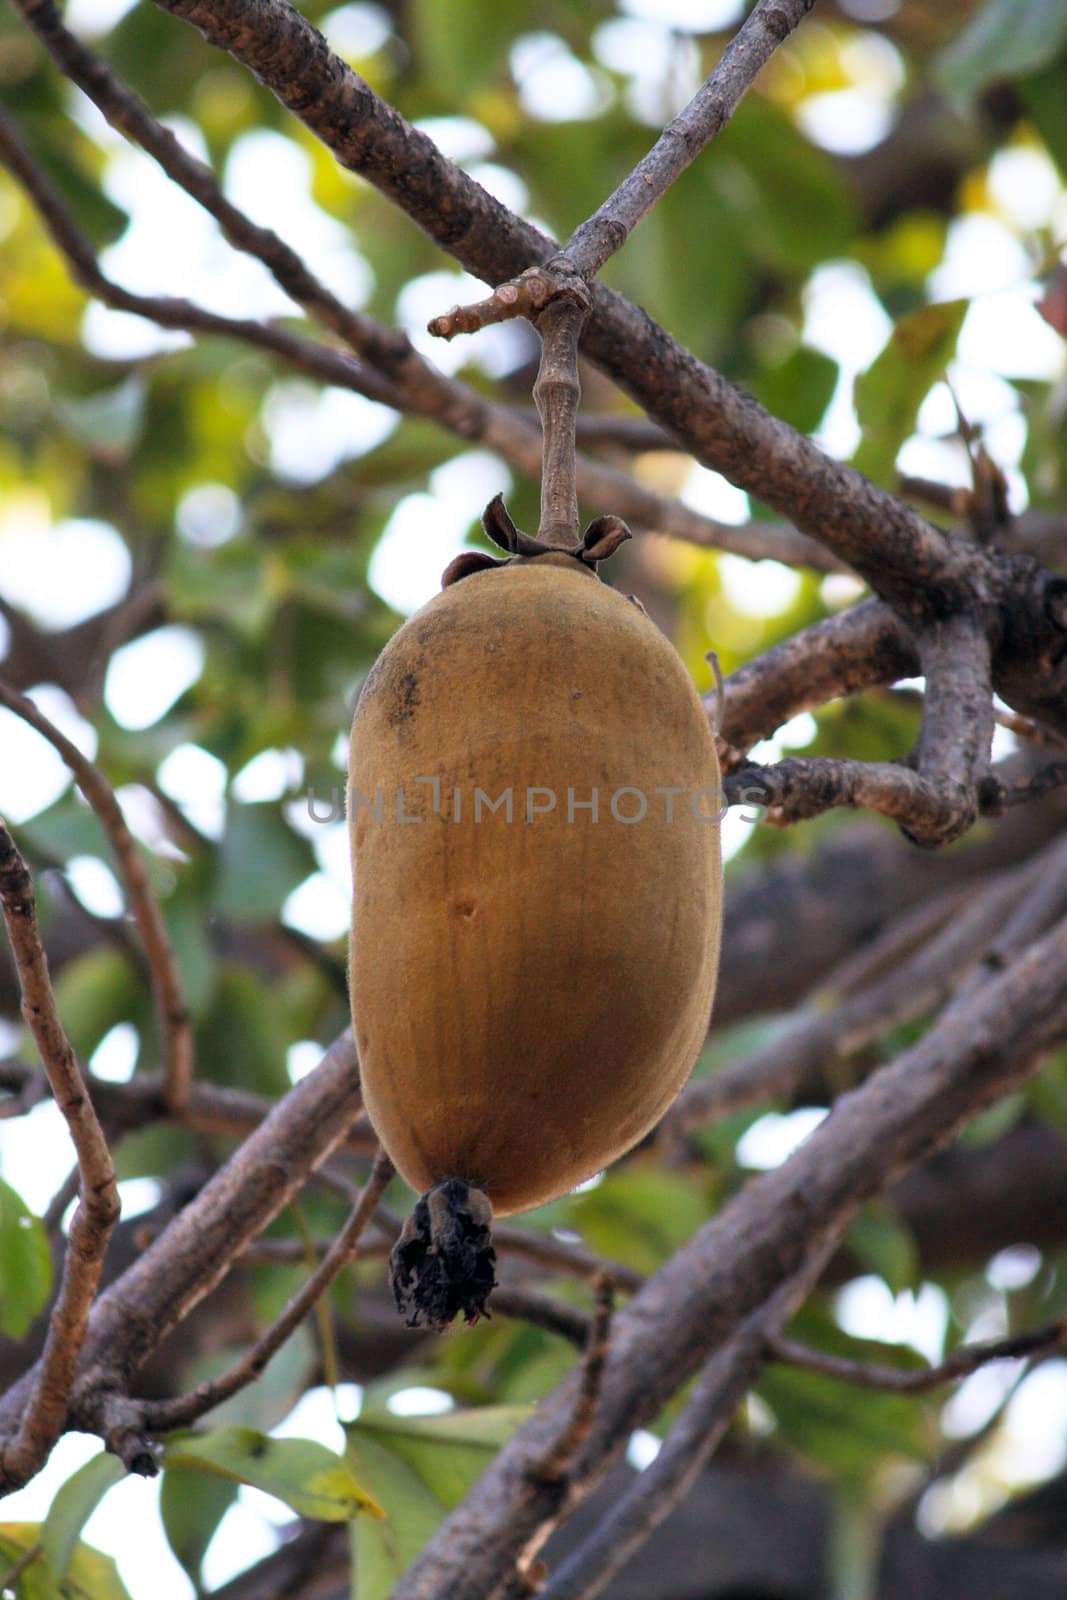 Baobab fruit by landon